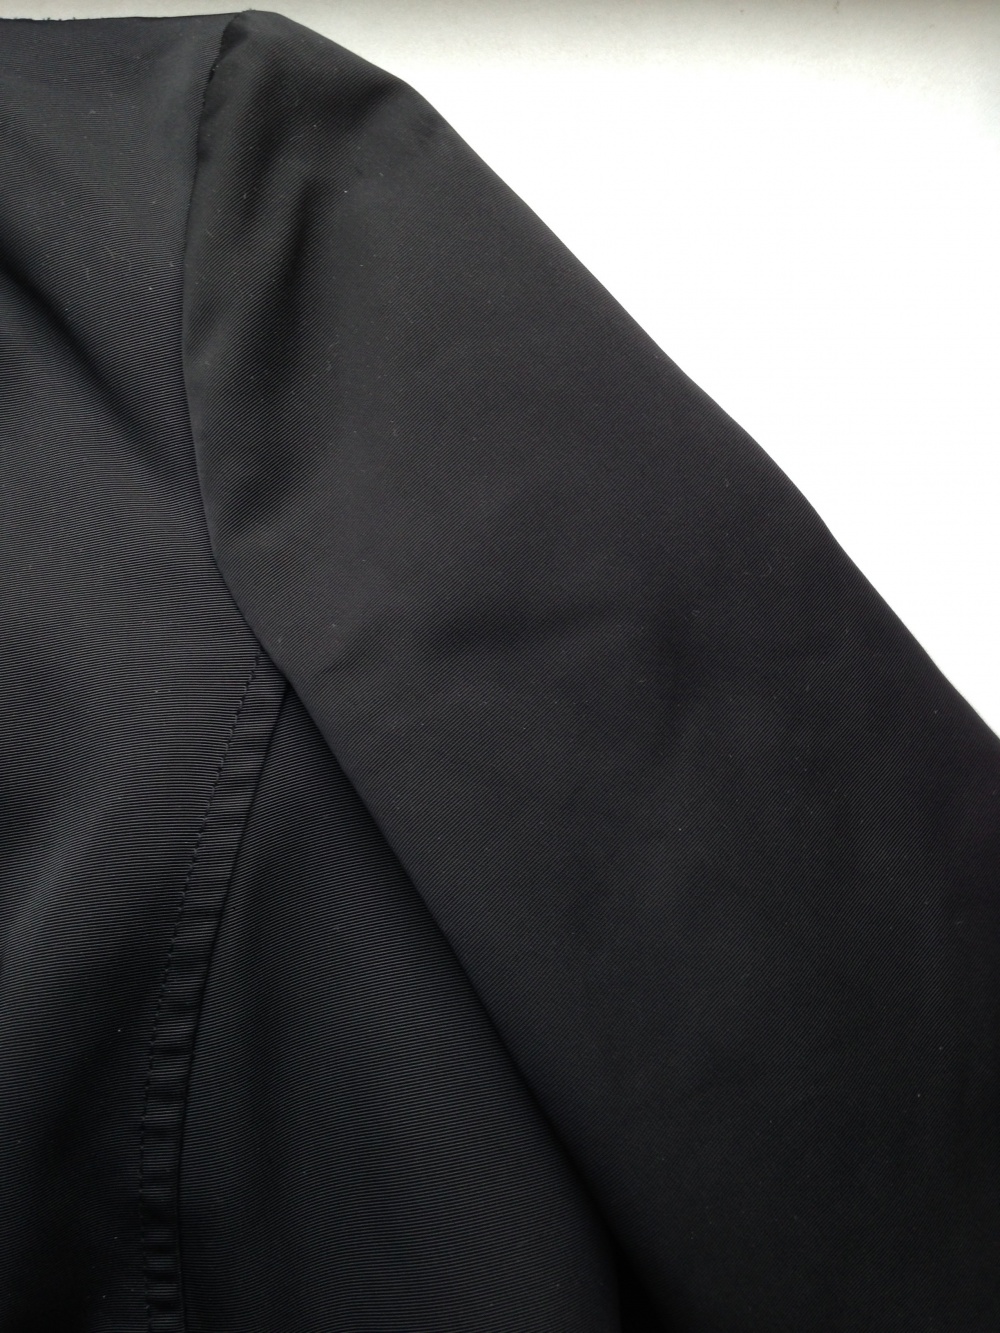 Утеплённая куртка " Armani ",  M размер